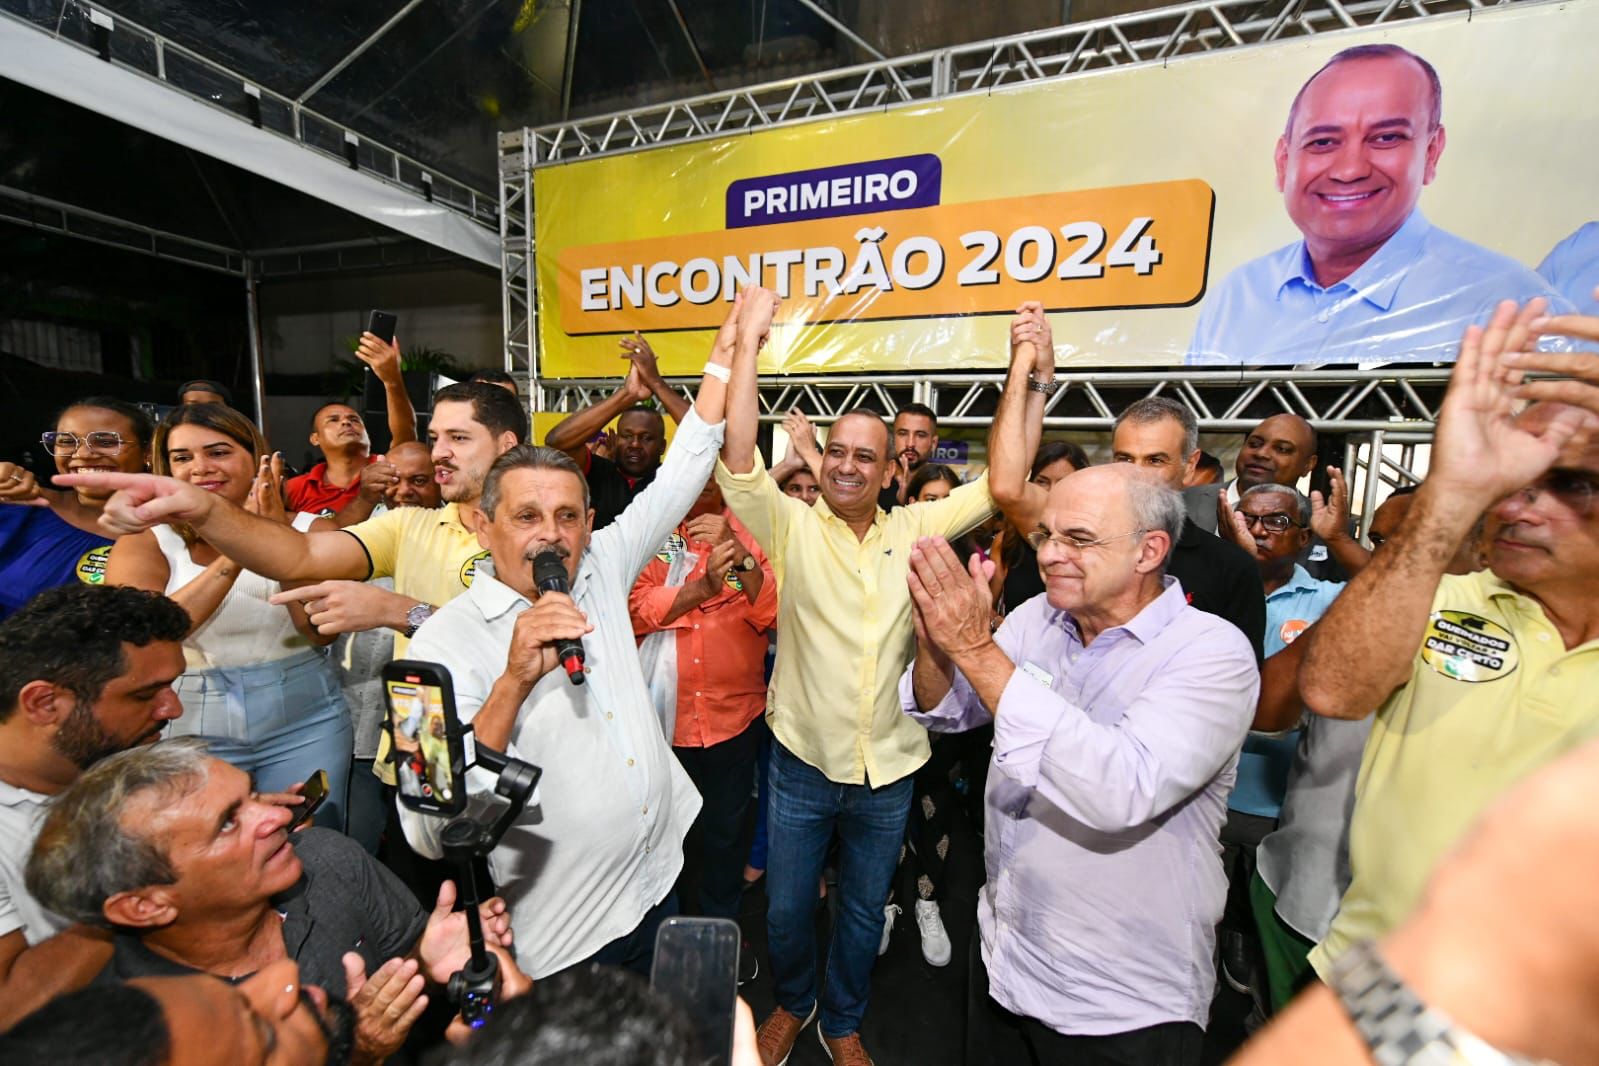 Encontrão em Queimados marca pré-candidatura de Max Lemos a prefeito